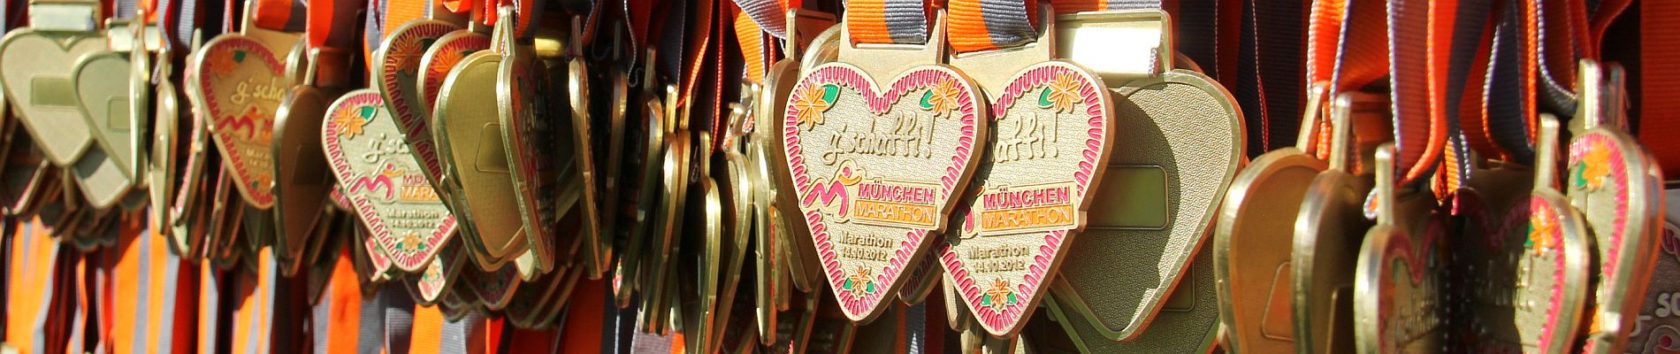 Marathon Training mit RUNNING Company in München bringt dir deine Finisher-Medaille